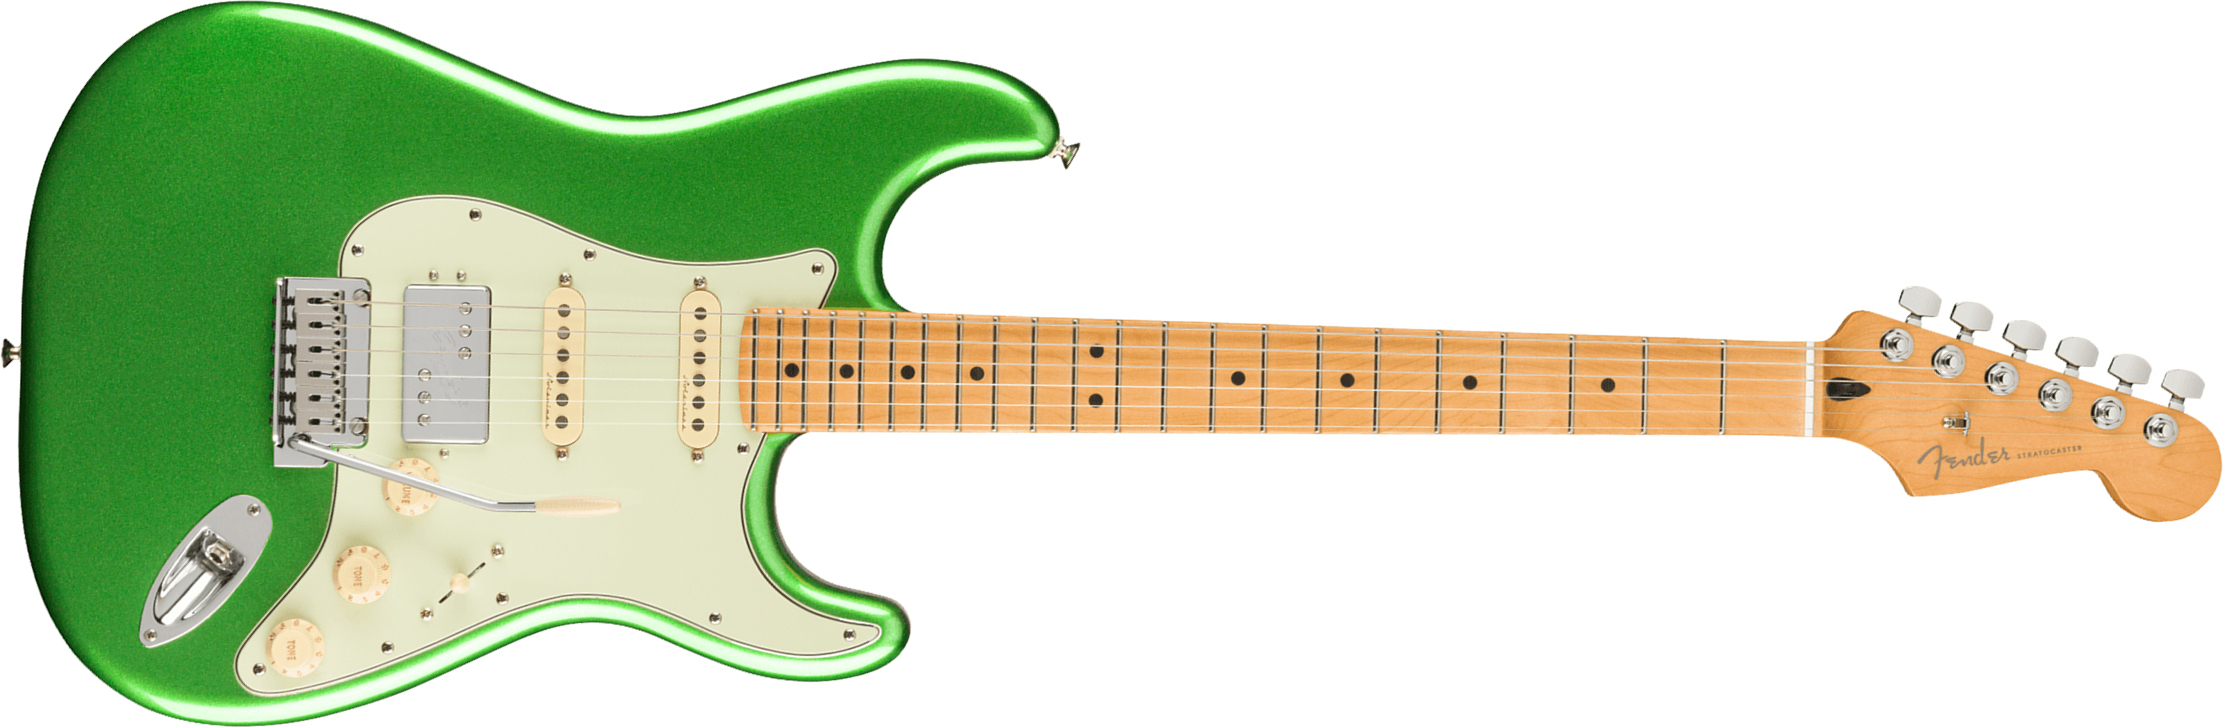 Fender Strat Player Plus Mex Hss Trem Mn - Cosmic Jade - Elektrische gitaar in Str-vorm - Main picture